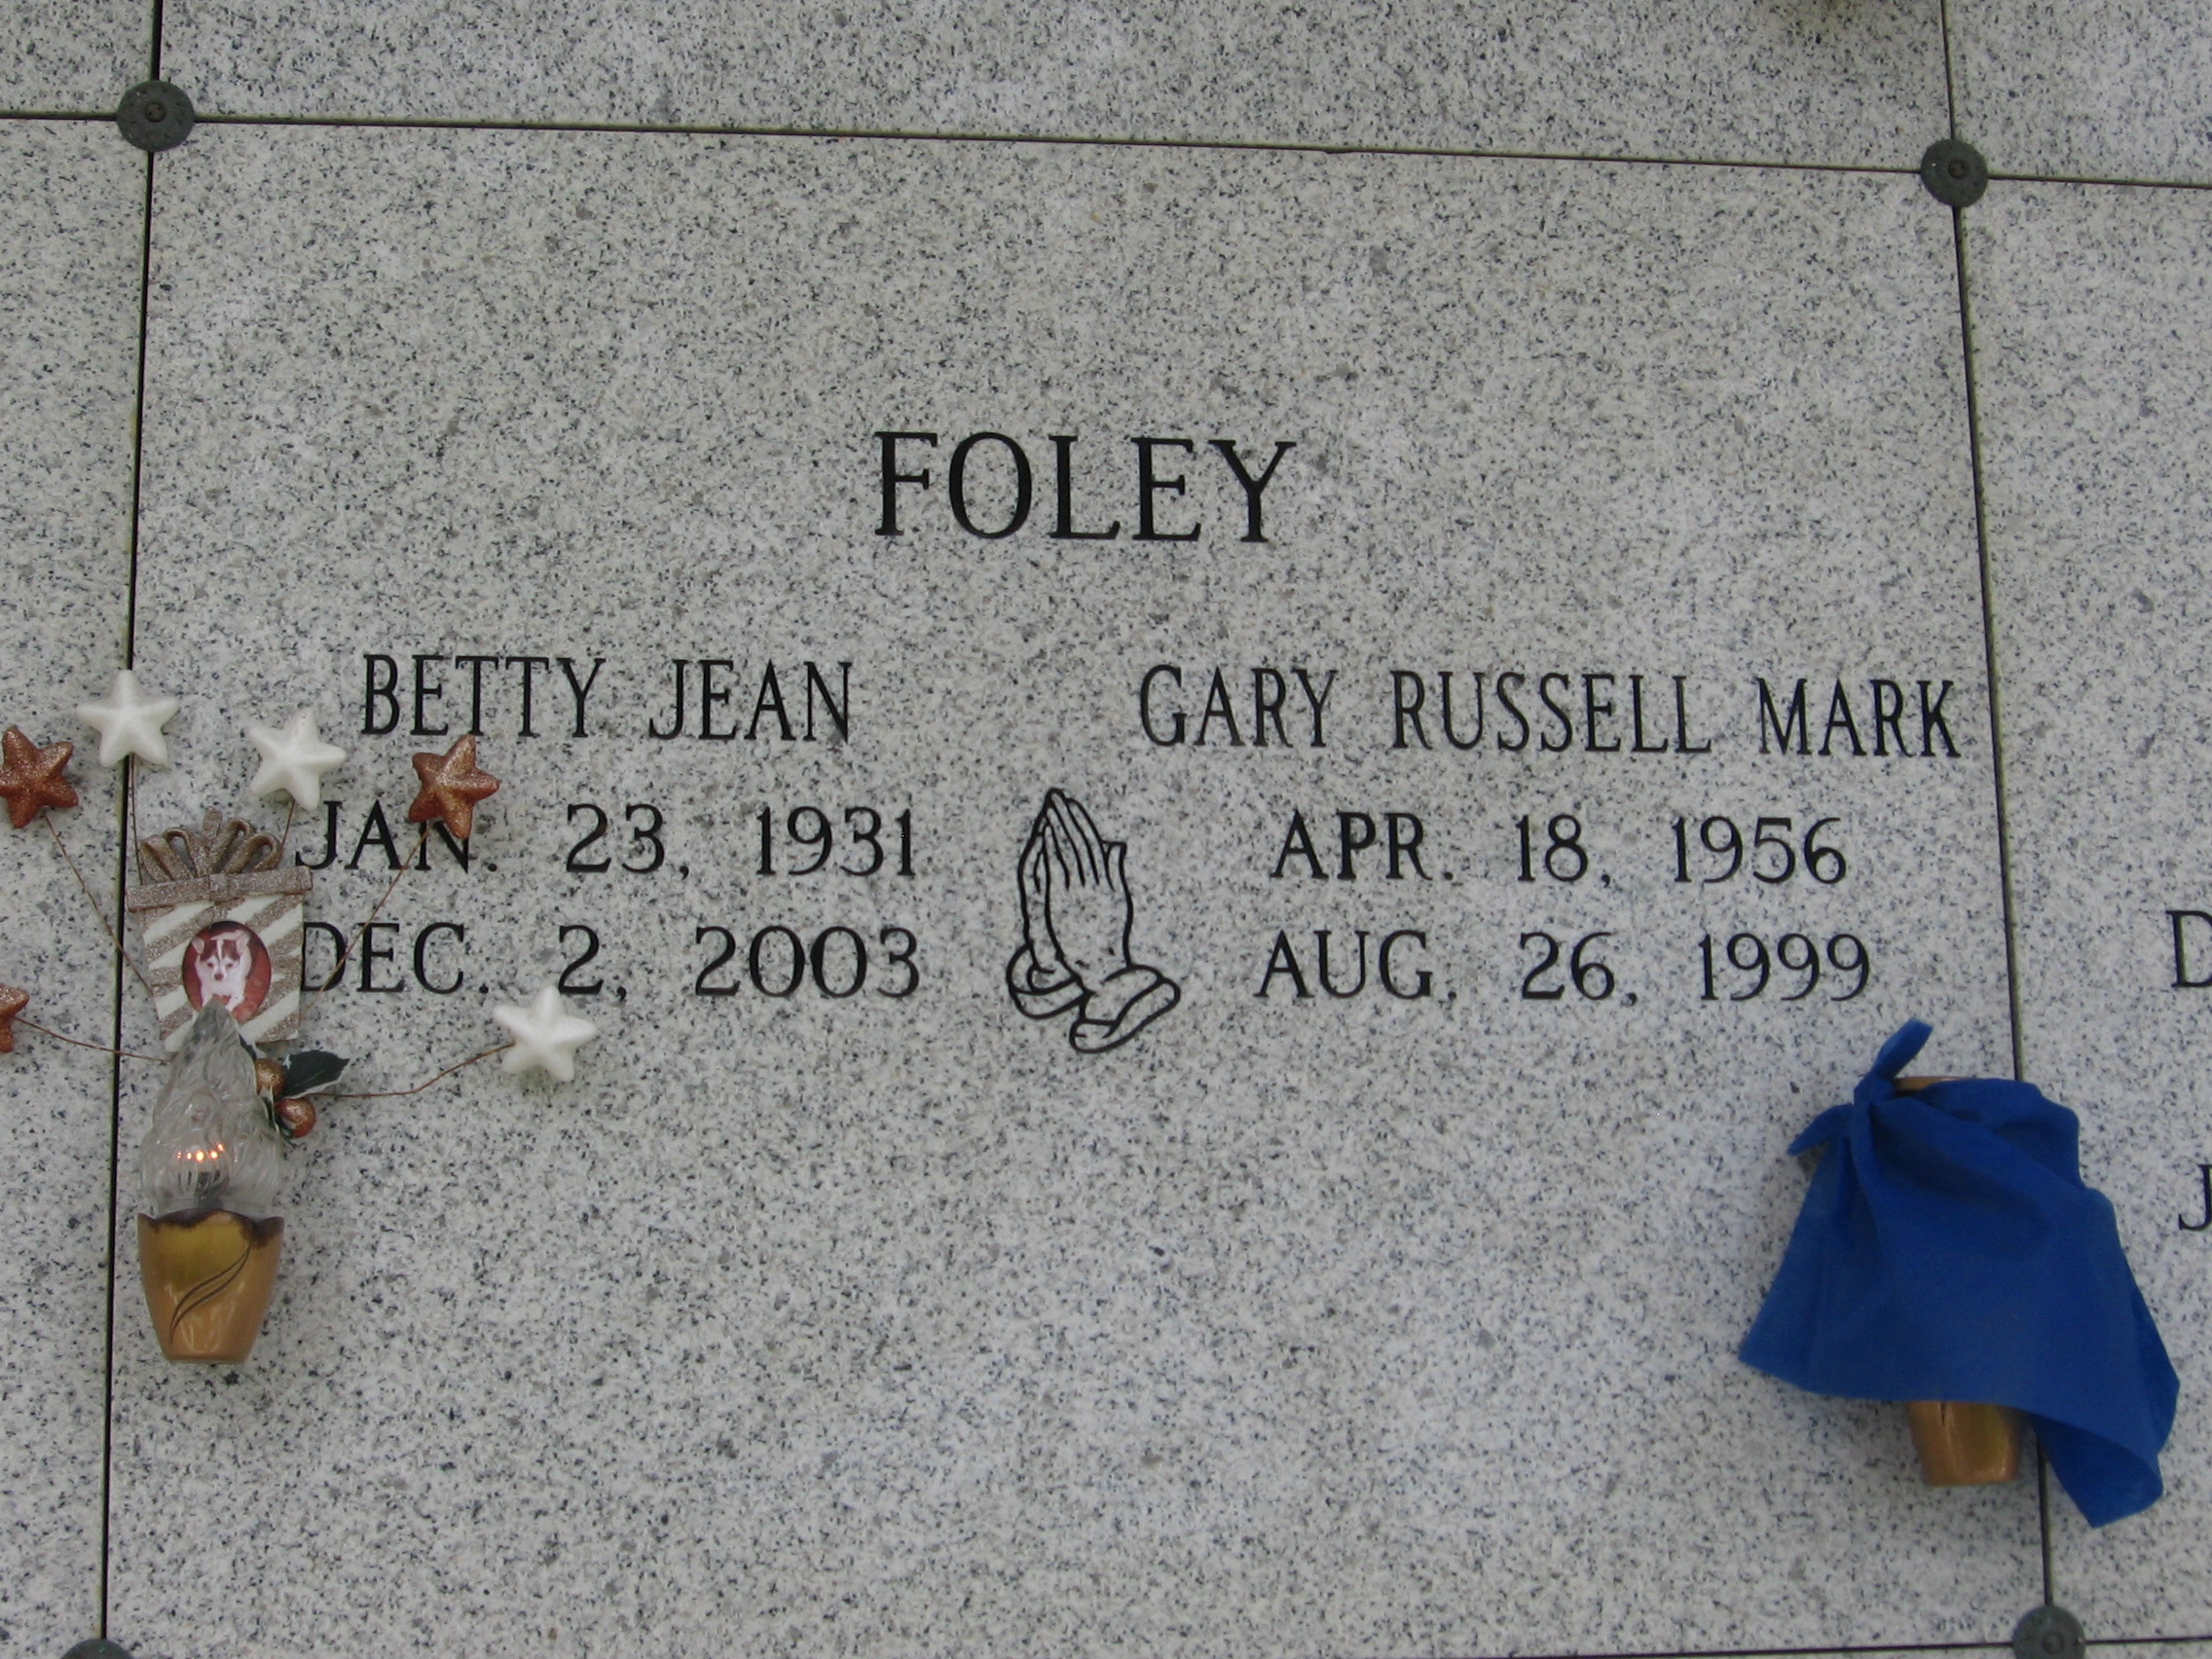 Betty Jean Foley